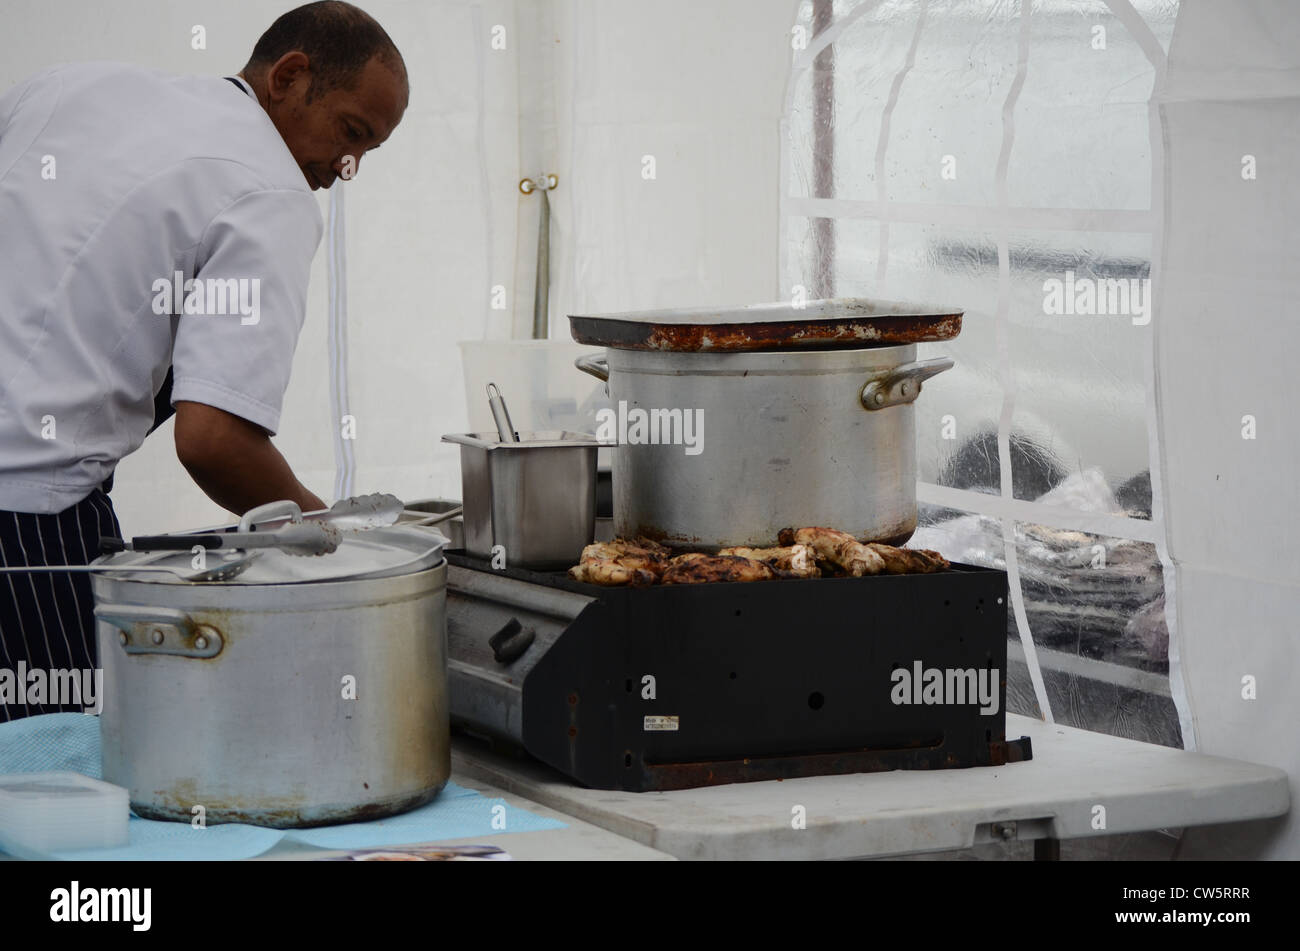 La préparation des aliments sur Chef afro-antillaise a market stall Banque D'Images